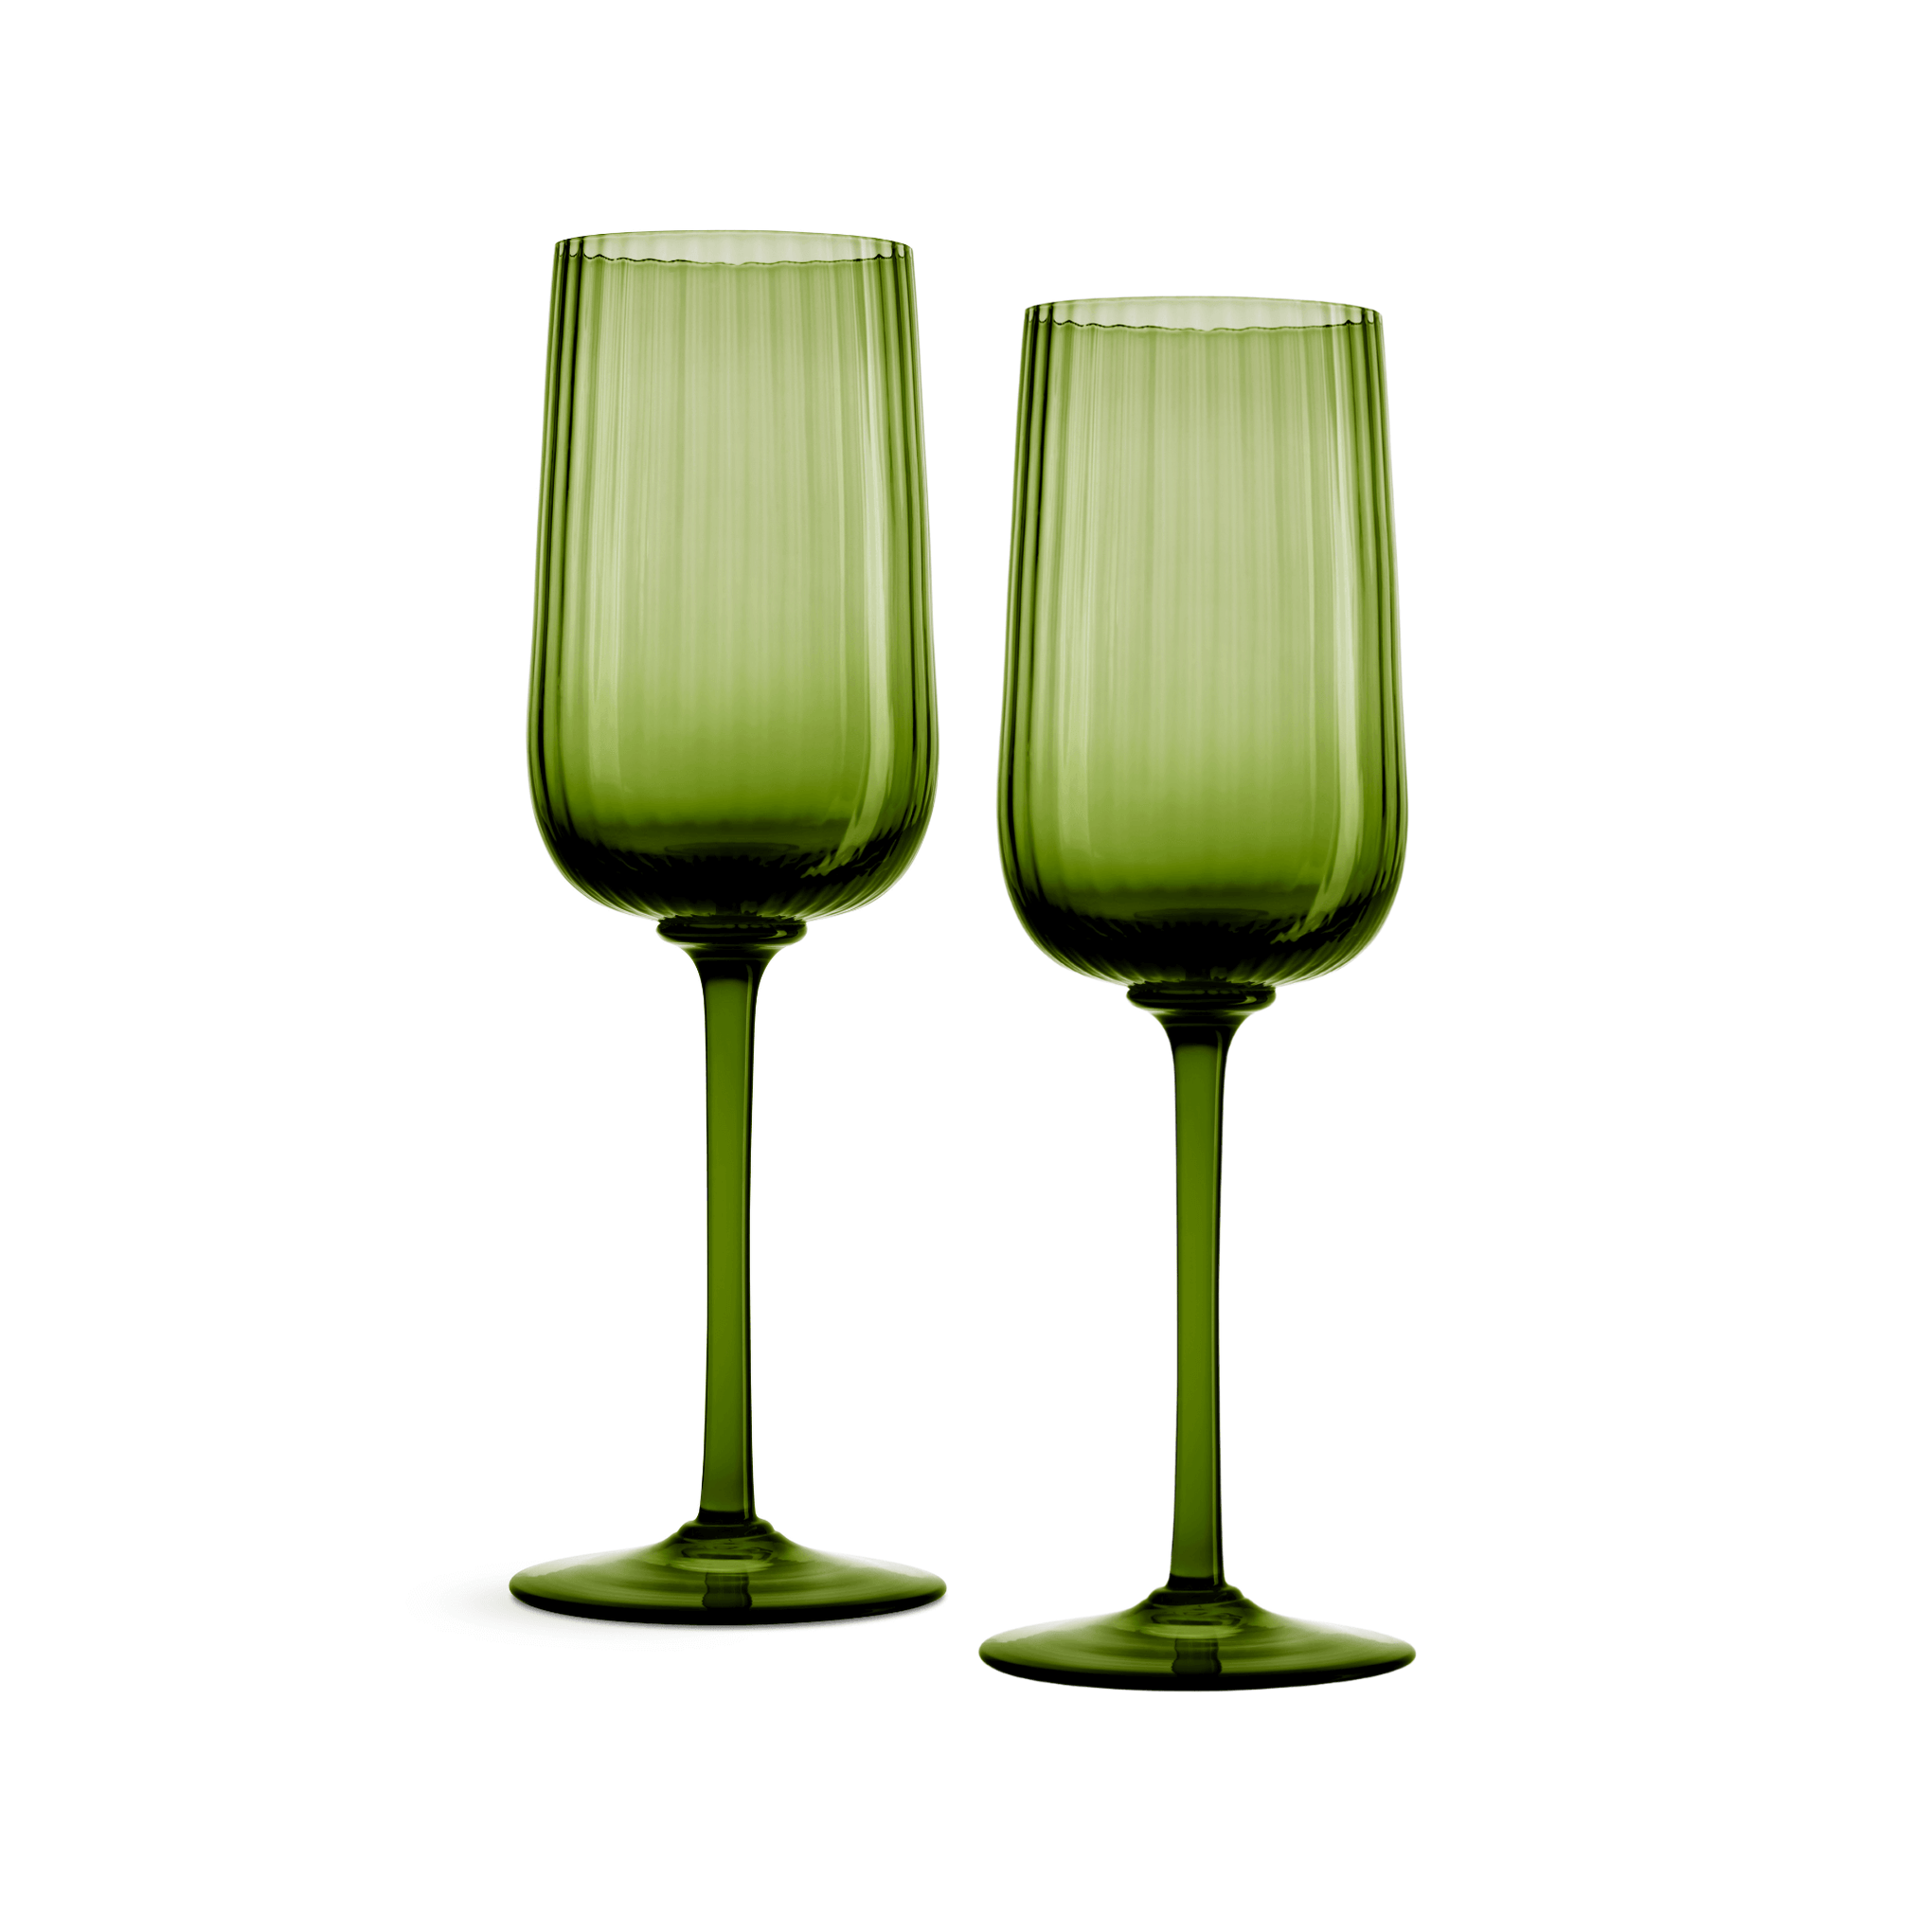 Nason Moretti Cote d’Or Murano White Wine Glass Pistachio Green